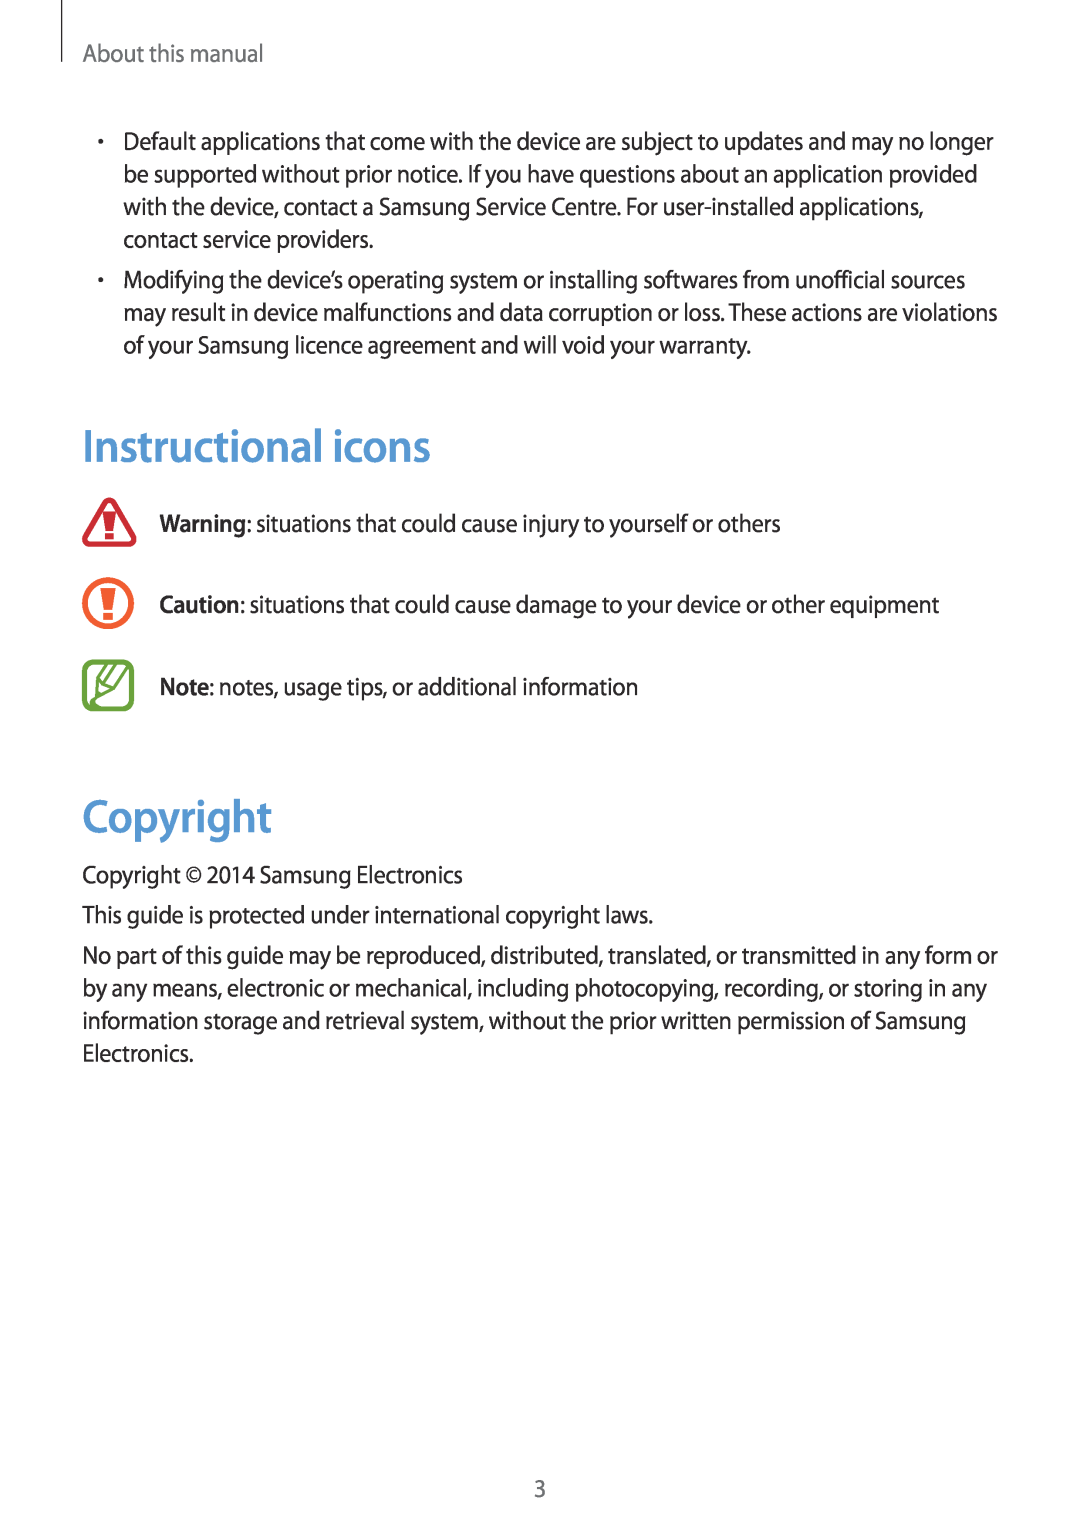 Samsung GT-N8000EAADBT, GT-N8000ZWAVD2, GT-N8000EAAVD2, GT-N8000EAAITV Instructional icons, Copyright, About this manual 